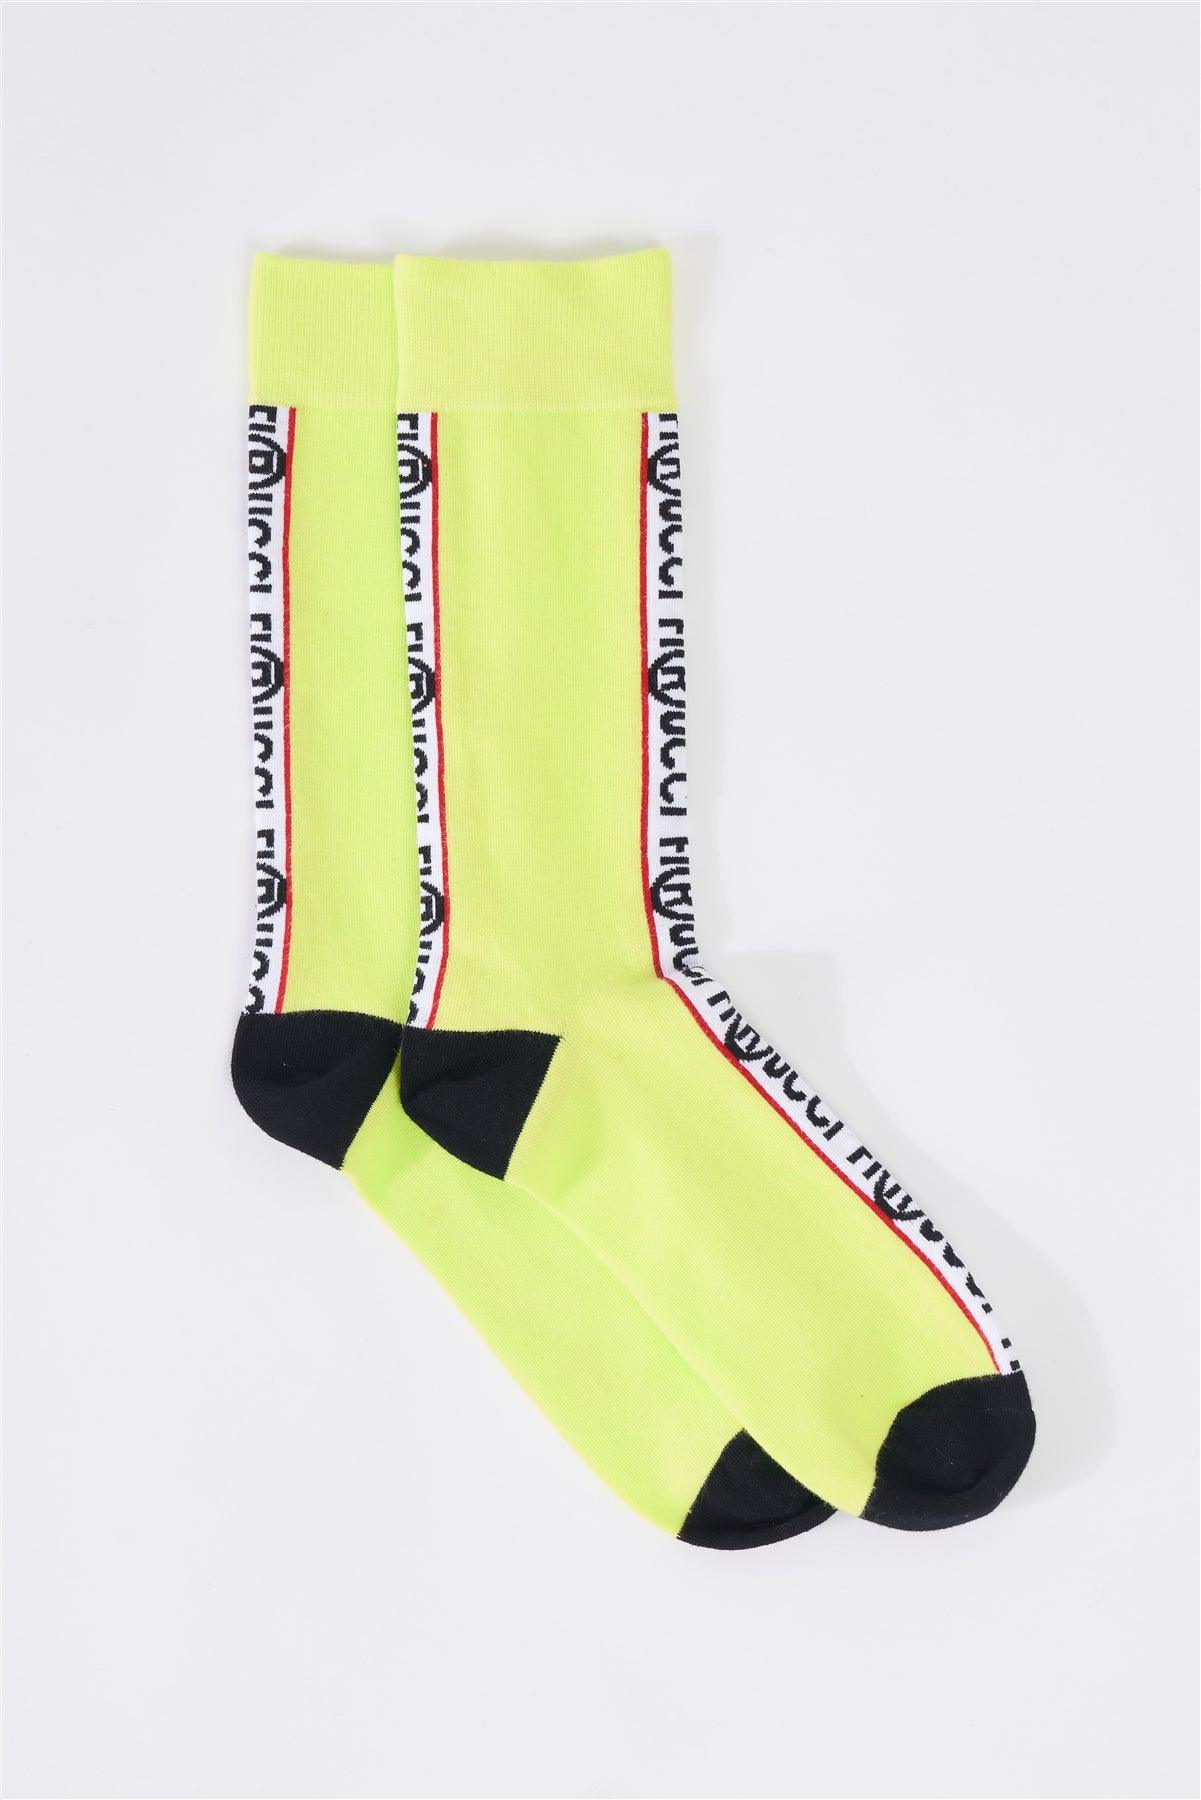 Fiorucci Fun Lime Green Mid Calf Logo Text Detail Socks /3 Pairs